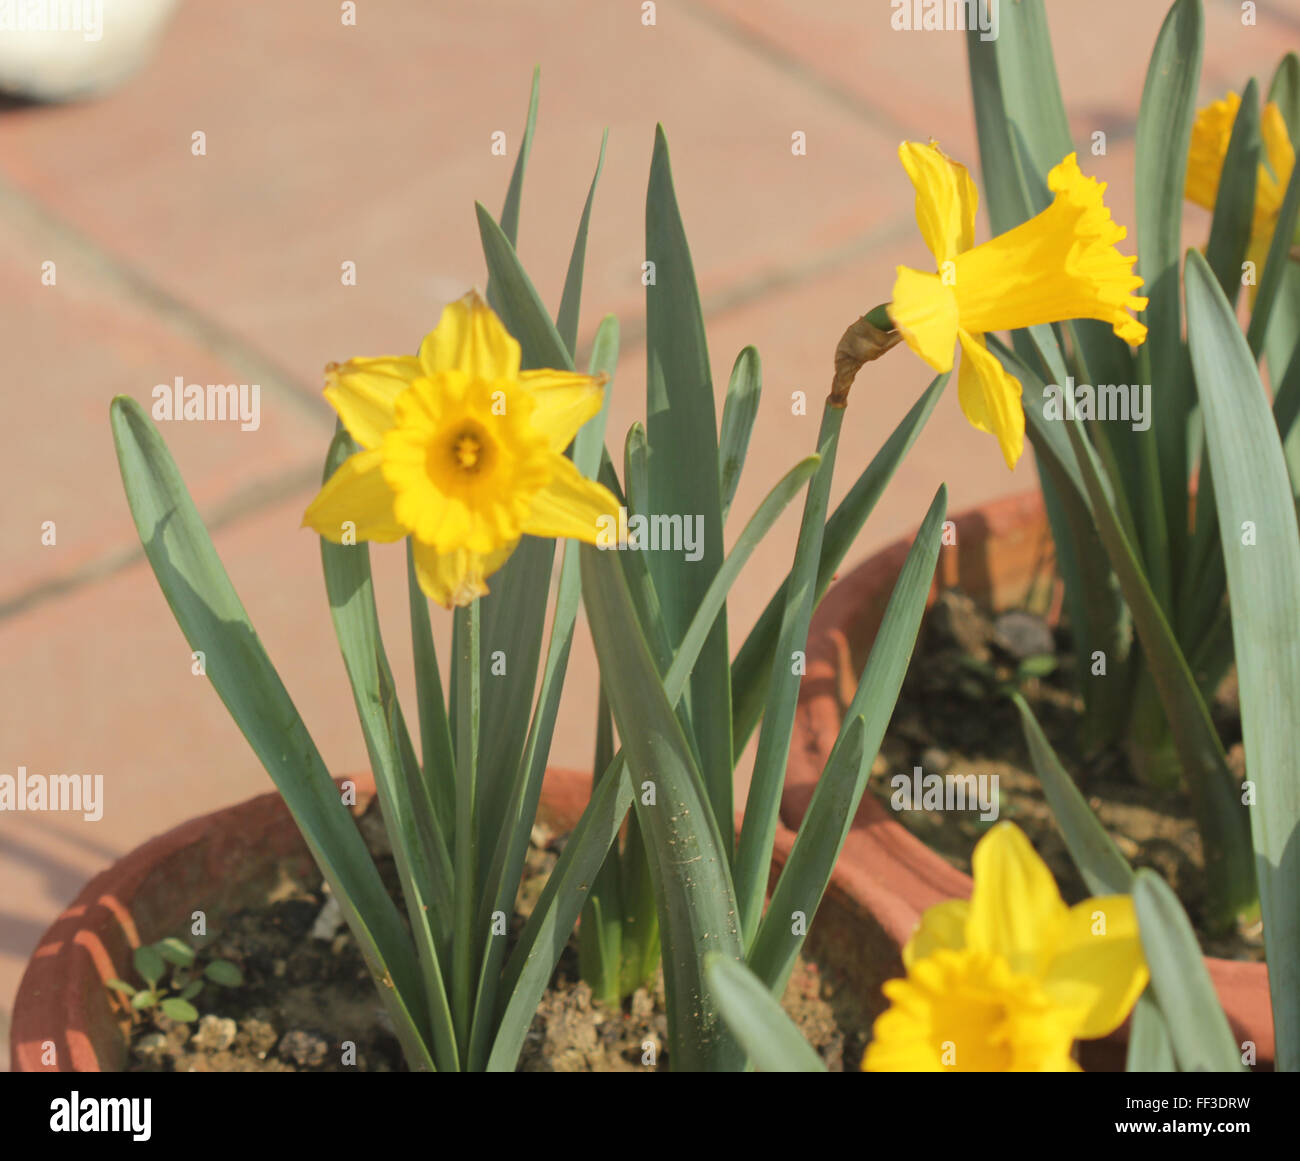 Narcissus pseudonarcissus jonquille sauvage, le carême, Lily, herbe vivace bulbeuse avec des fleurs jaunes sur une longue hampe florale, corona de long Banque D'Images